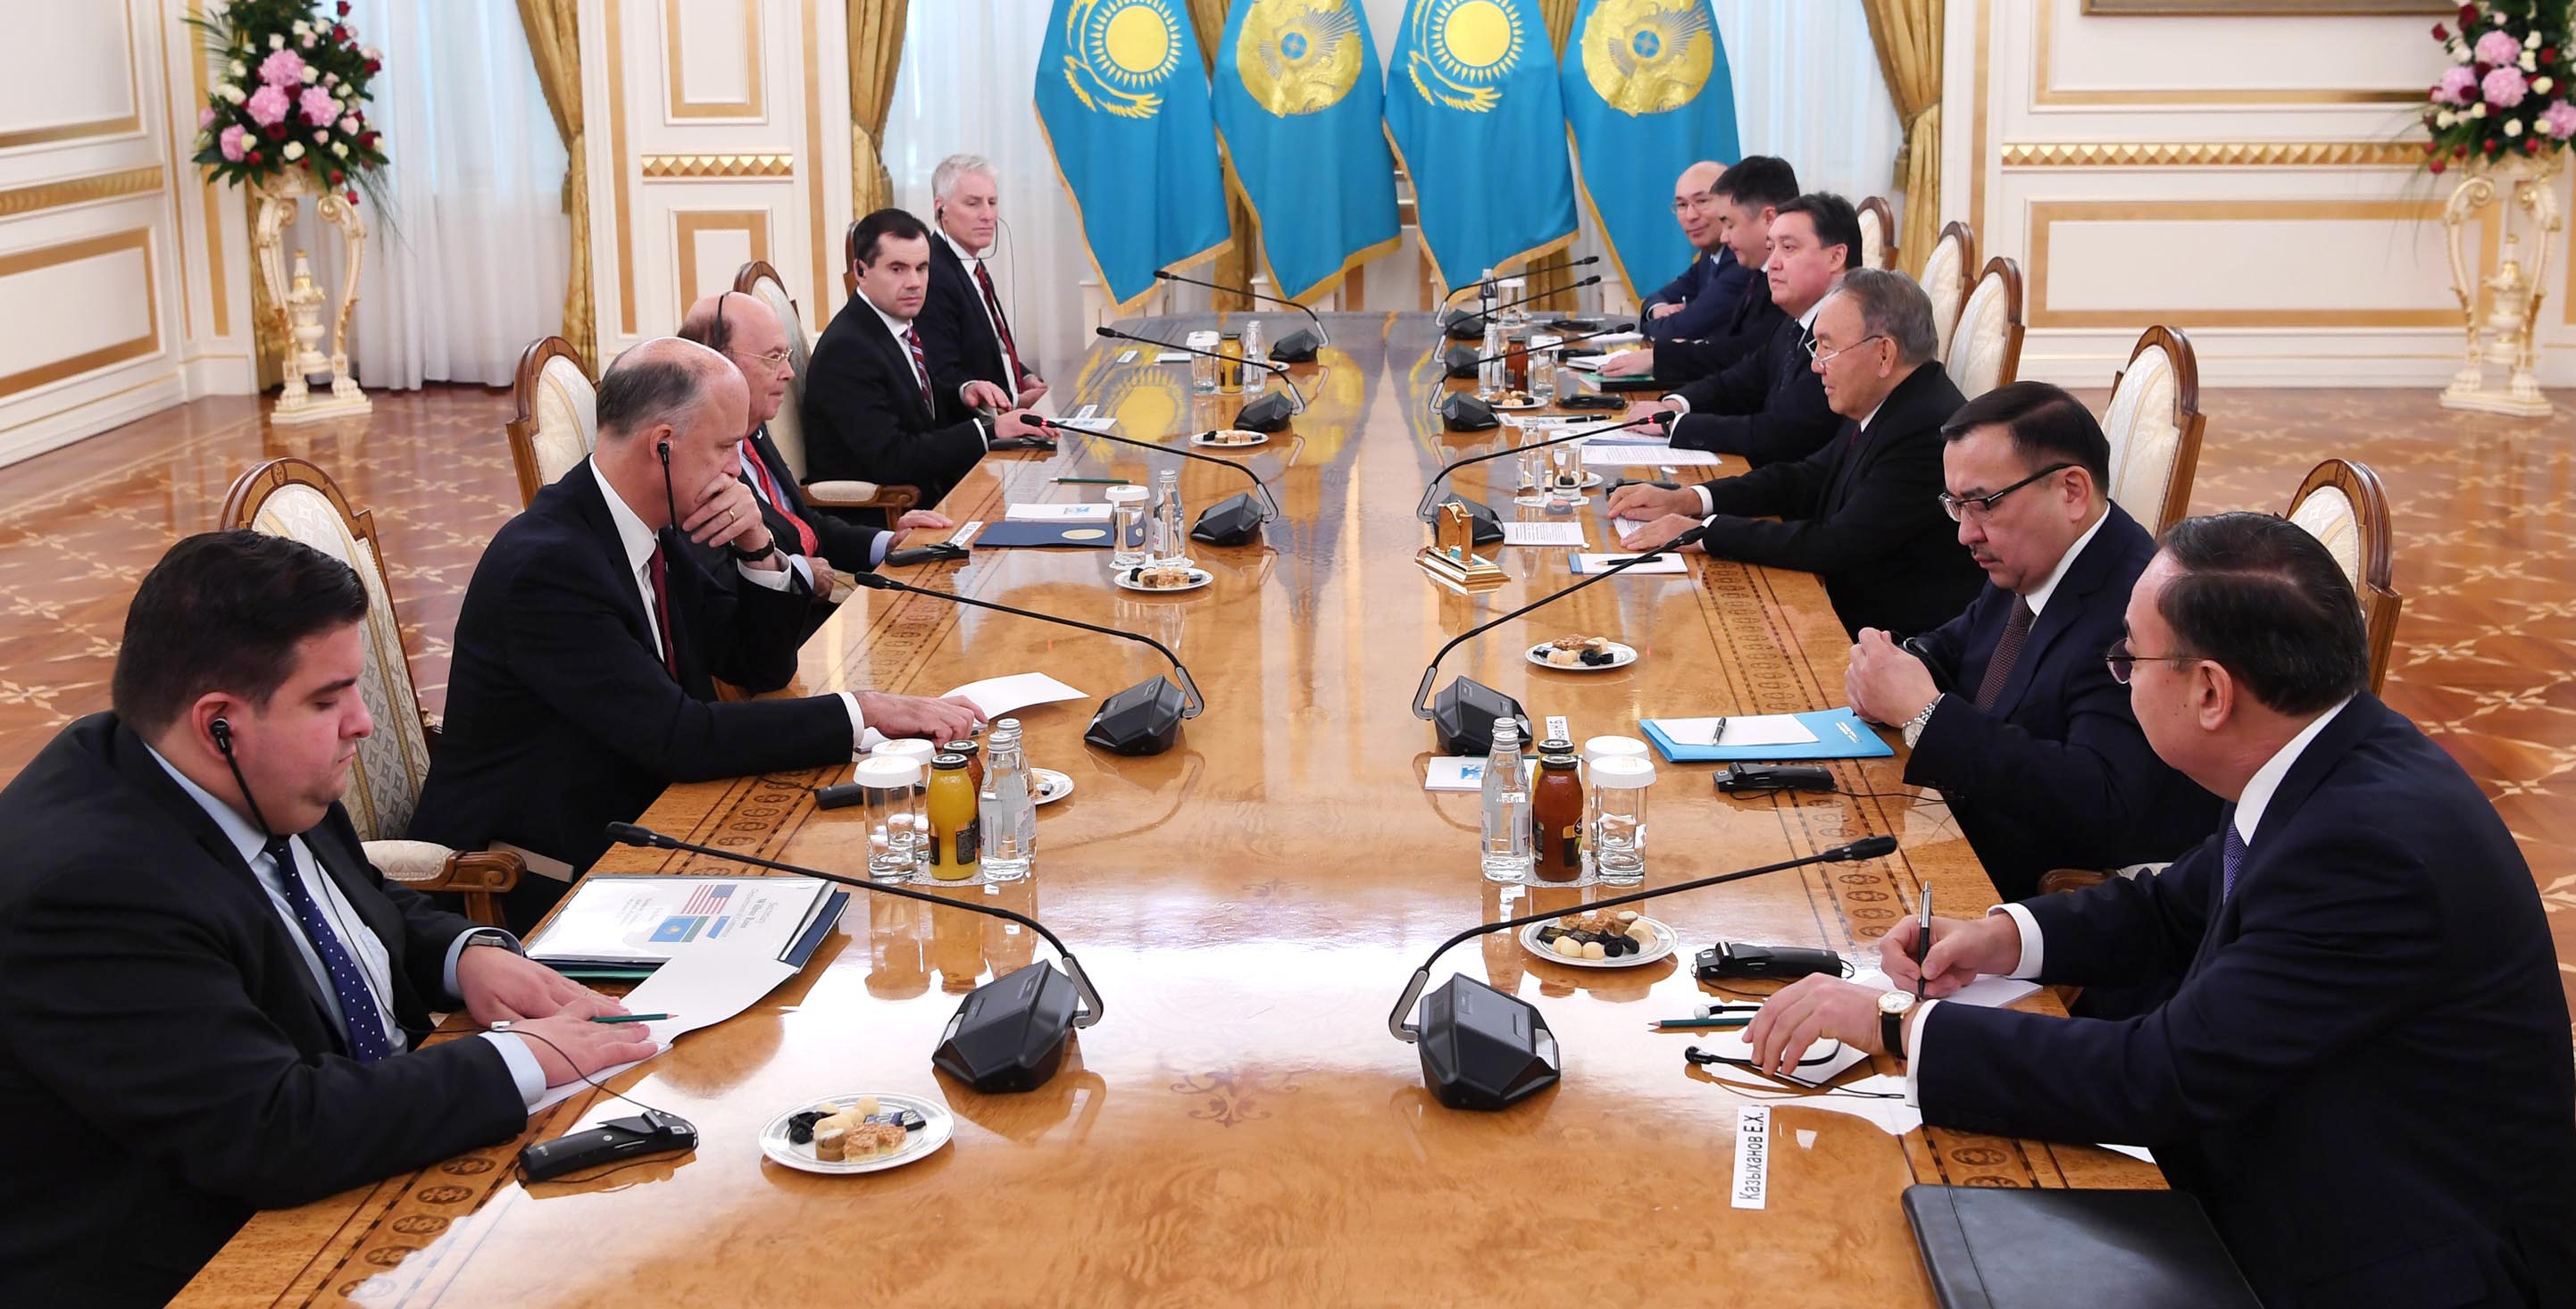 Астанаға АҚШ-тың сауда министрі бастаған 16 компанияның делегациясы келді